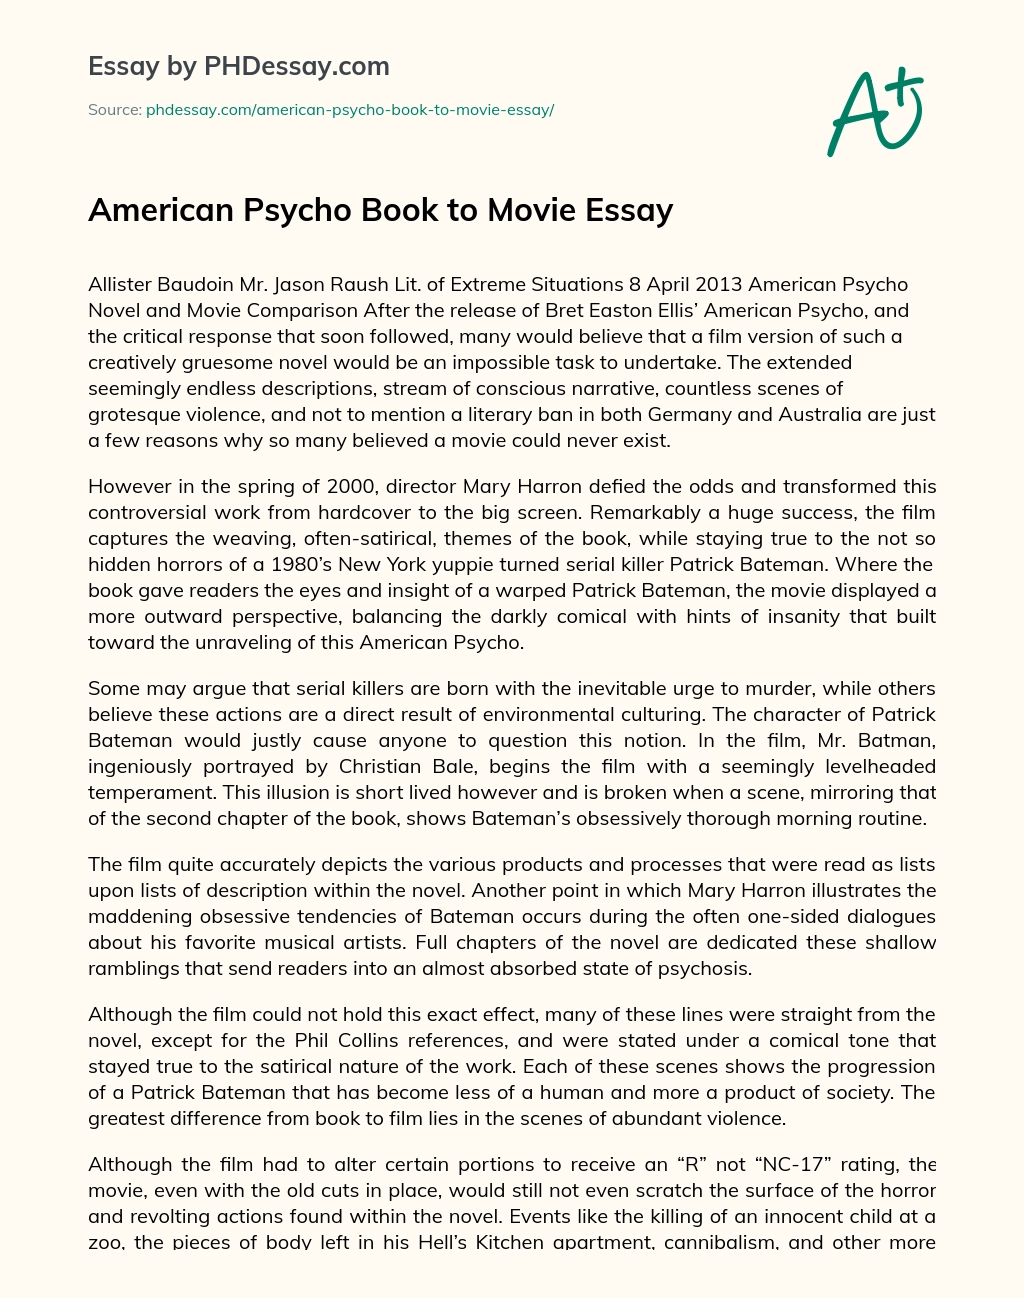 American Psycho Book to Movie Essay essay